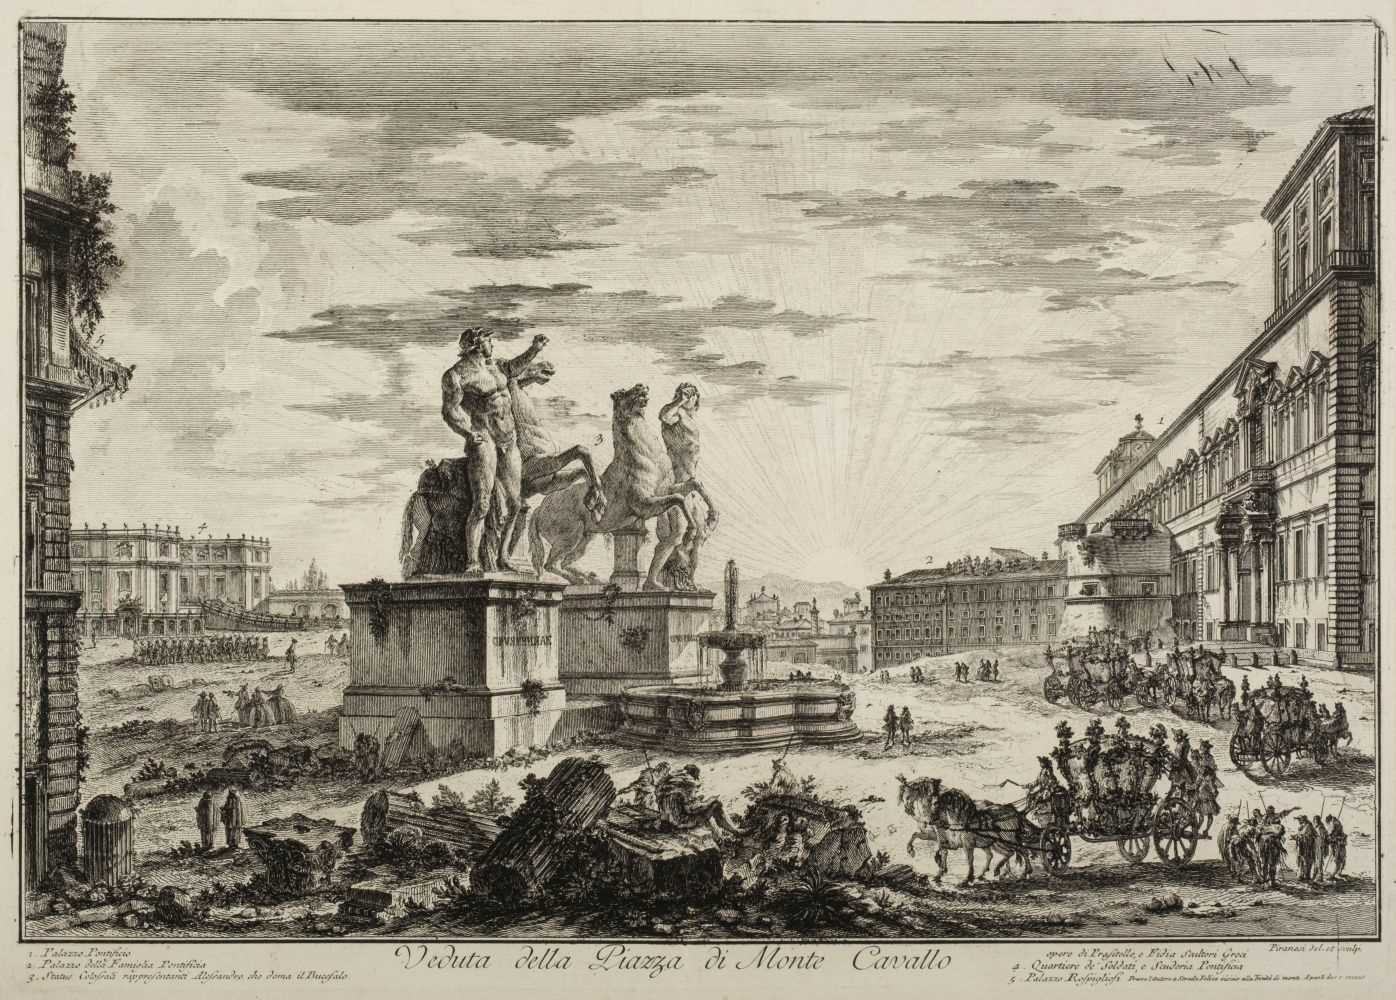 Lot 397 - Piranesi (Giovanni Battista, 1720-1778). Veduta della Piazza di Monte Cavallo, 1750